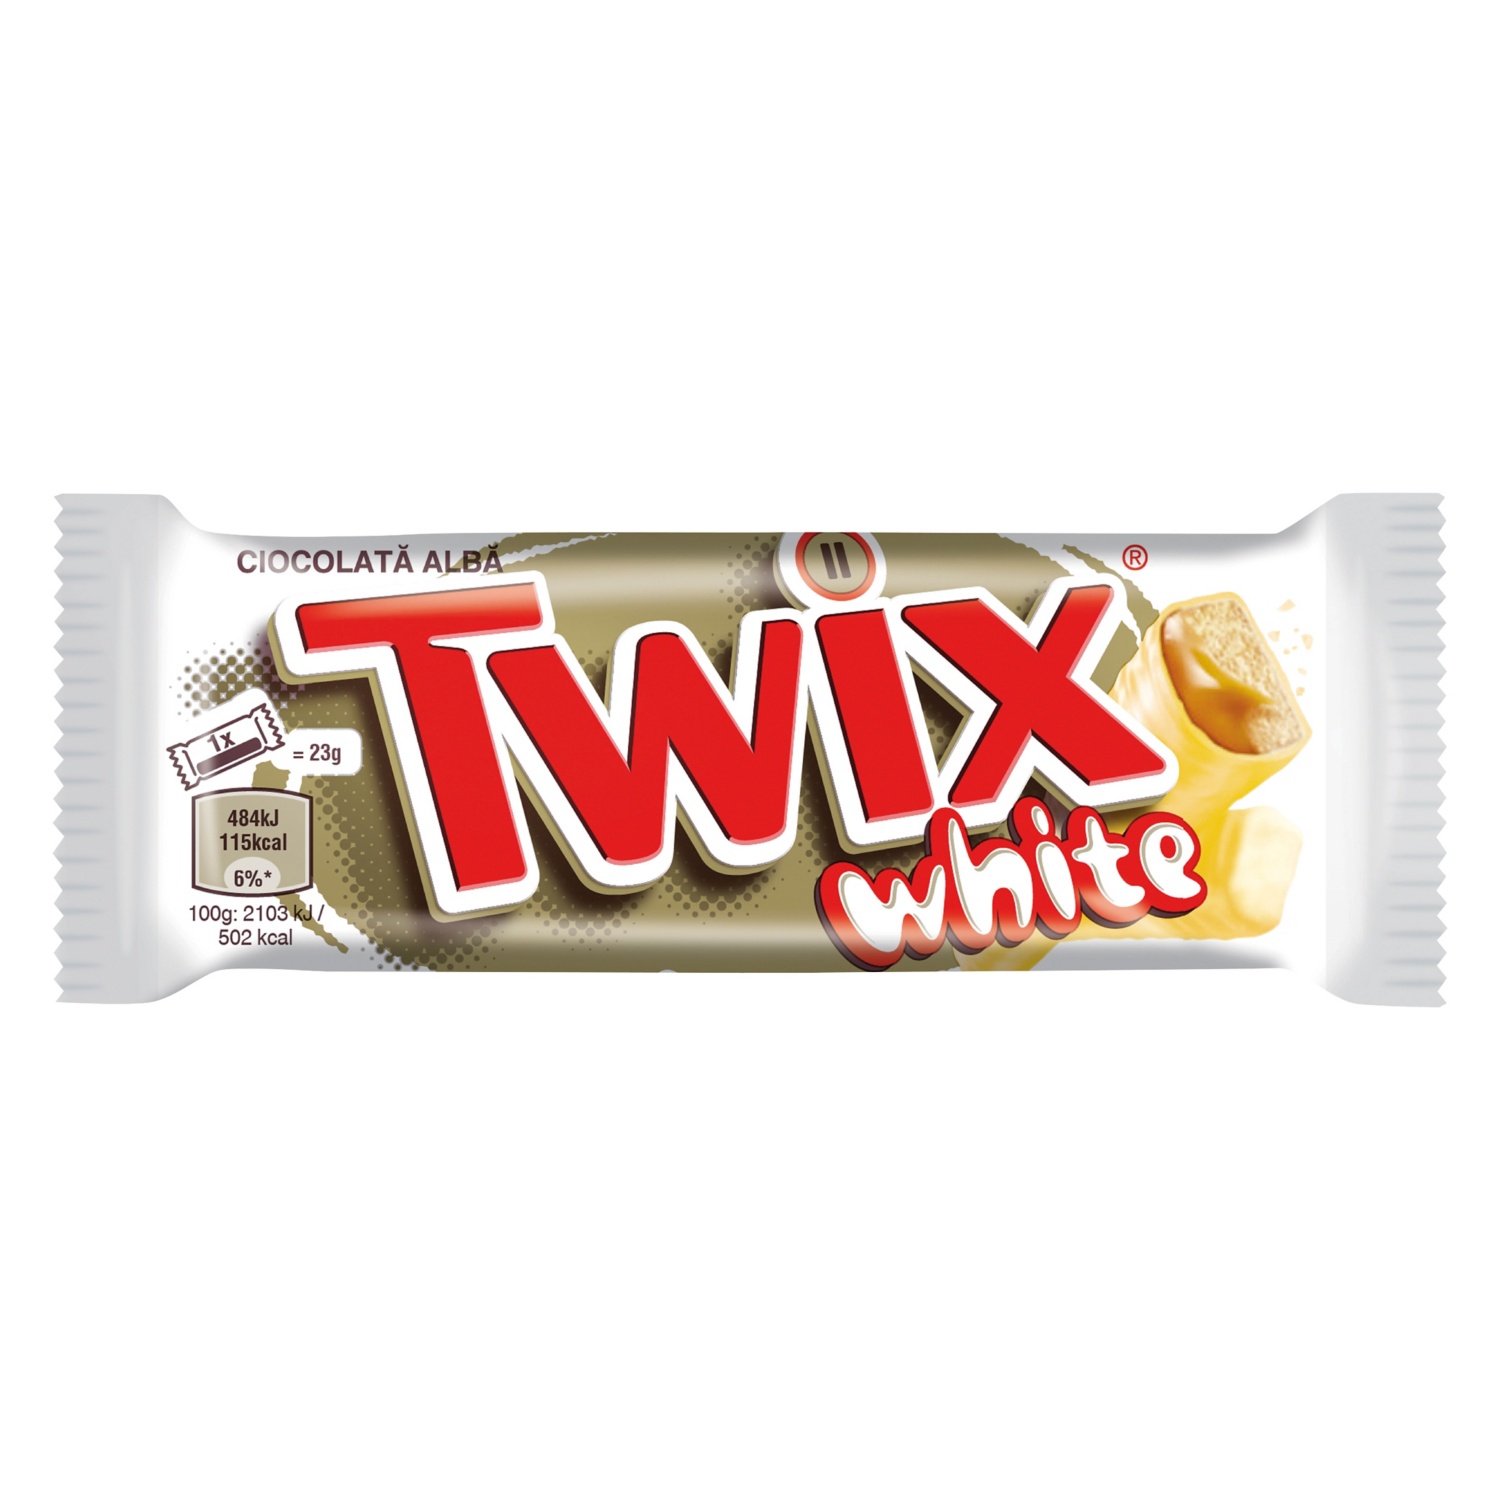 TWIX White, 46 g